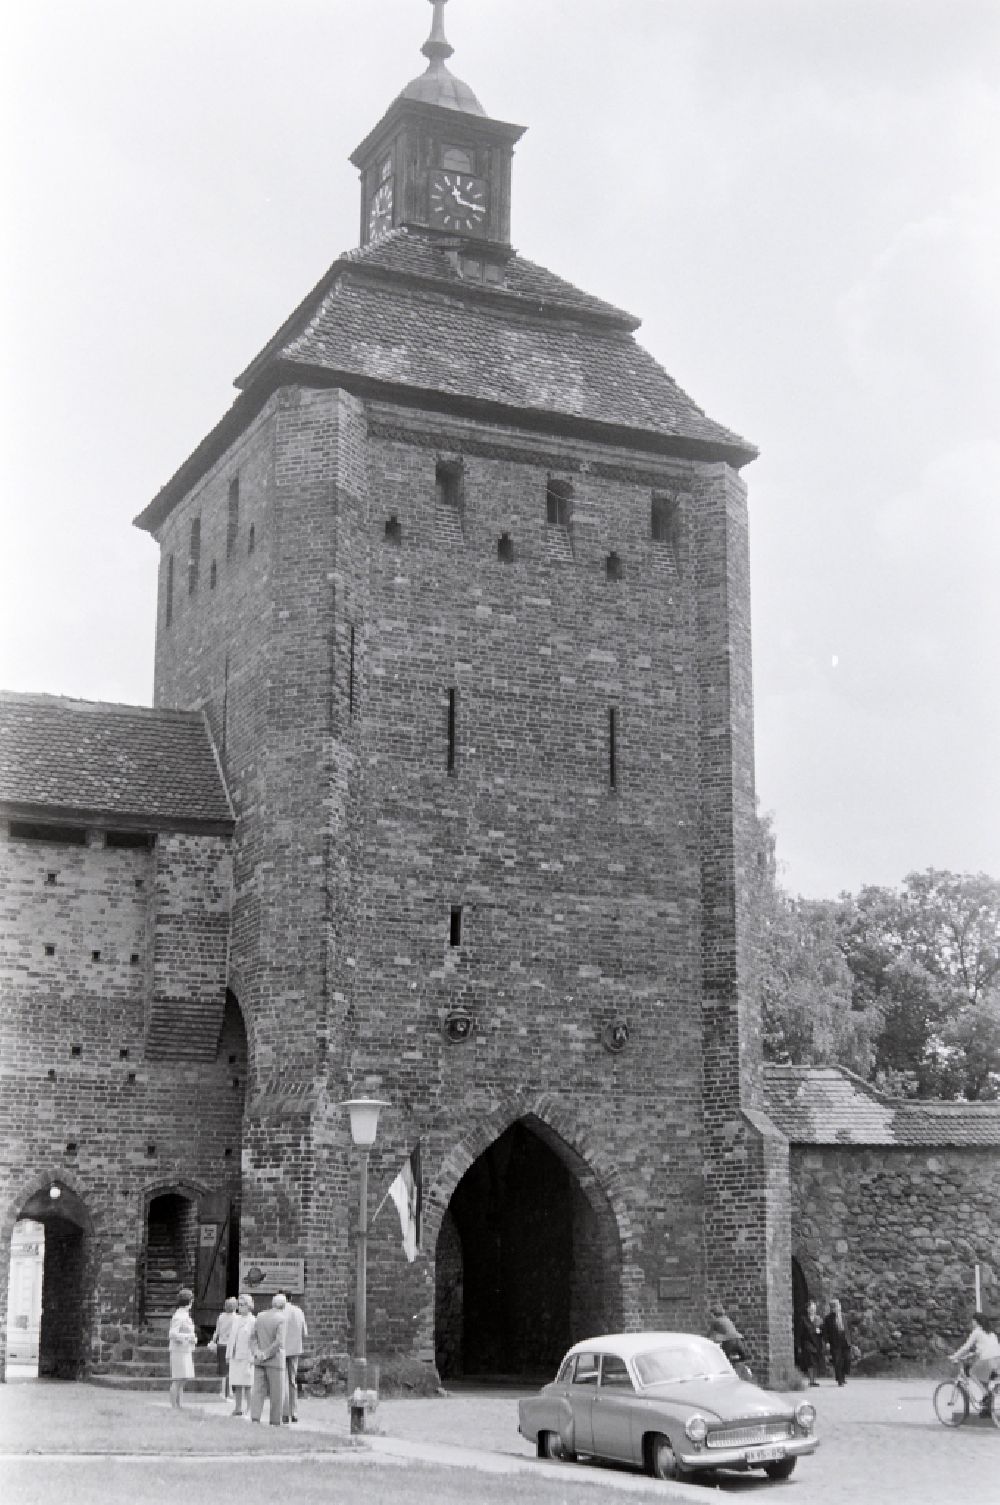 DDR-Bildarchiv: Bernau - Historische Stadtmauer der Altstadt am Steintor in Bernau in der DDR